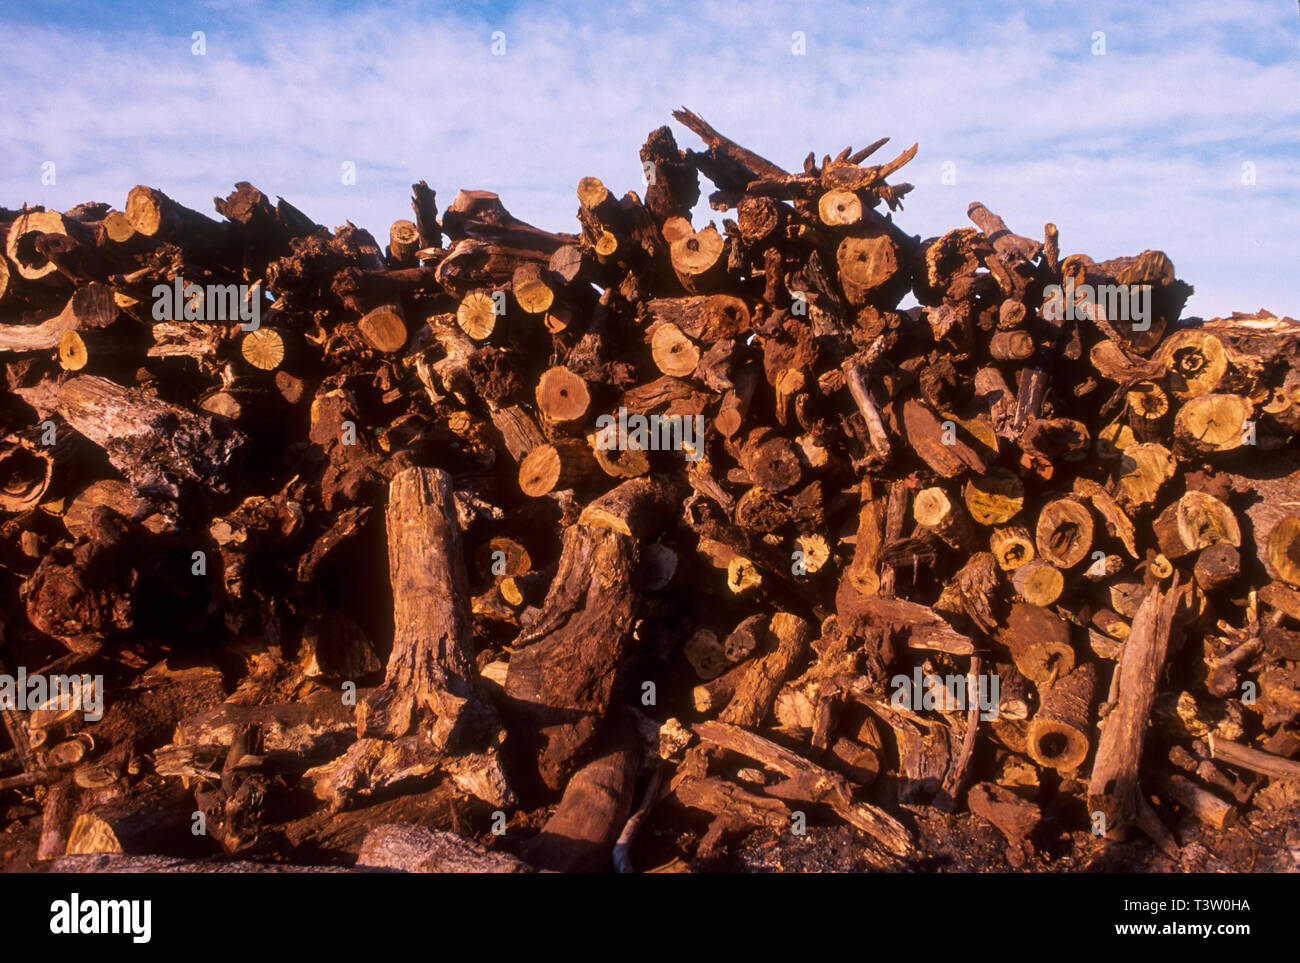 La producción de carbón vegetal que se utiliza como combustible para  producir arrabio - el producto intermedio de mineral de hierro de fundición  - aumenta la deforestación bioma Cerrado - Estado de